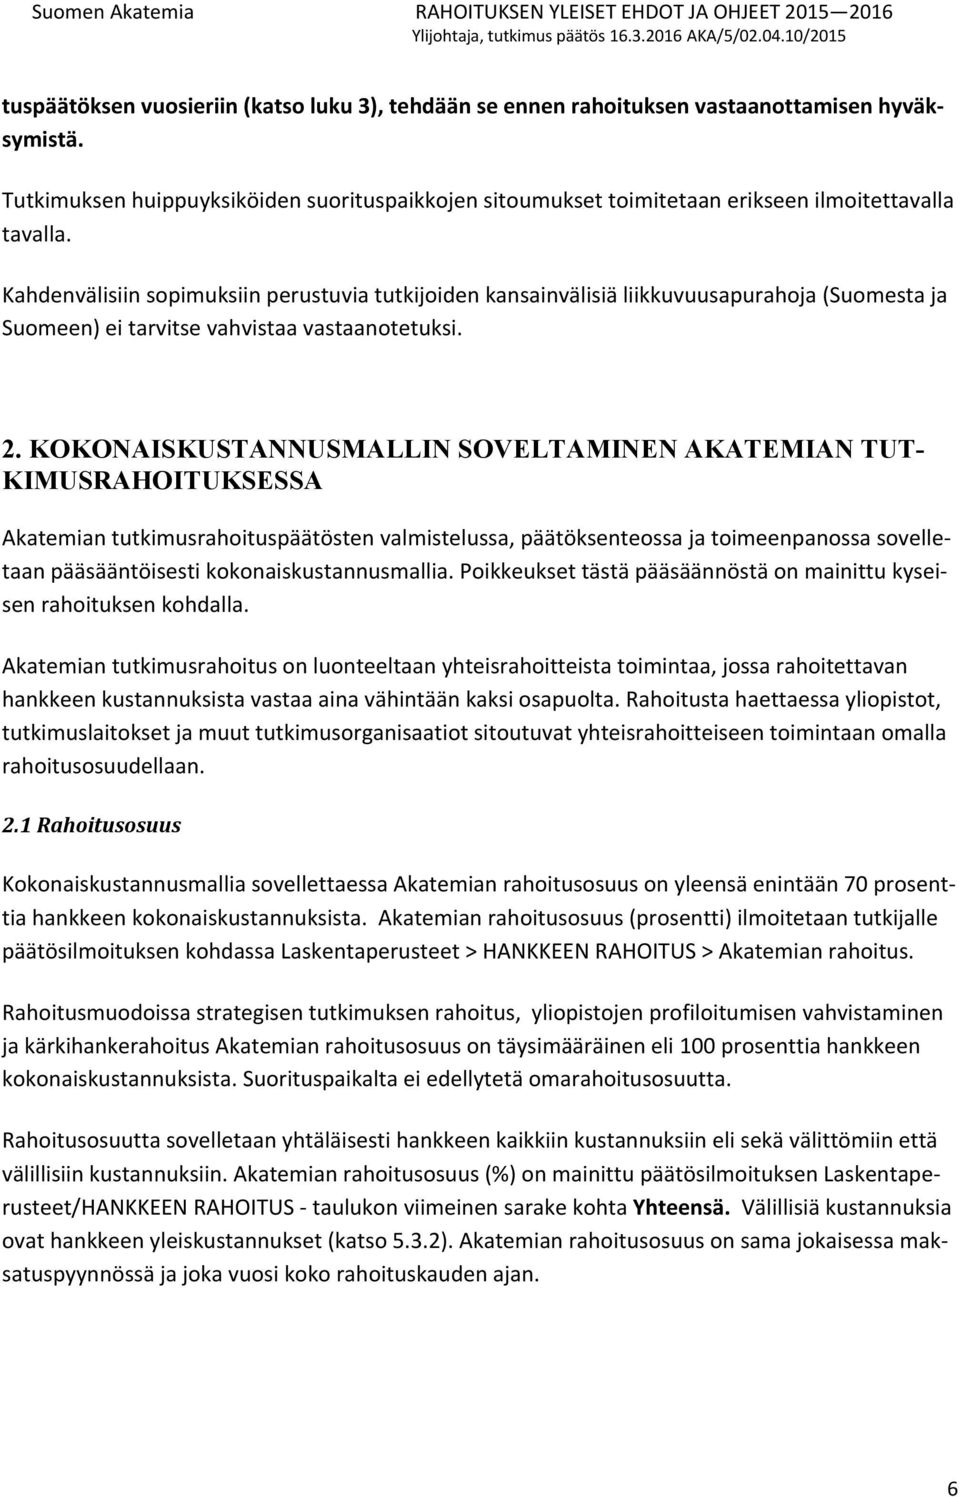 Kahdenvälisiin sopimuksiin perustuvia tutkijoiden kansainvälisiä liikkuvuusapurahoja (Suomesta ja Suomeen) ei tarvitse vahvistaa vastaanotetuksi. 2.